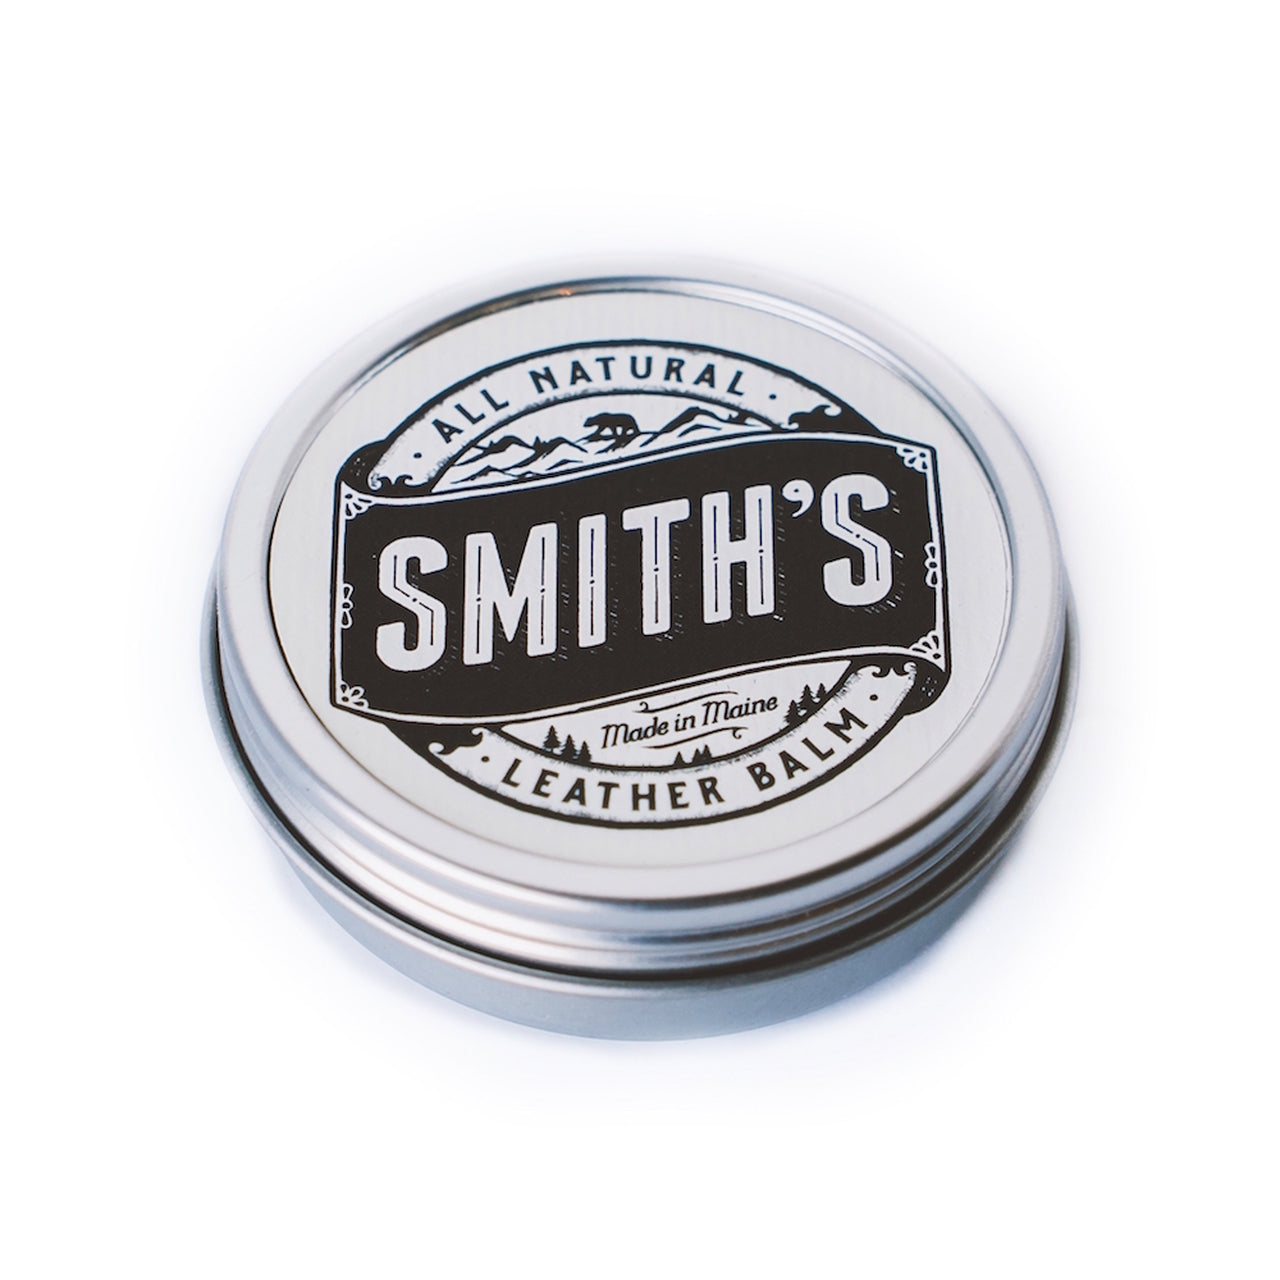 1 oz. Smith's Leather Balm